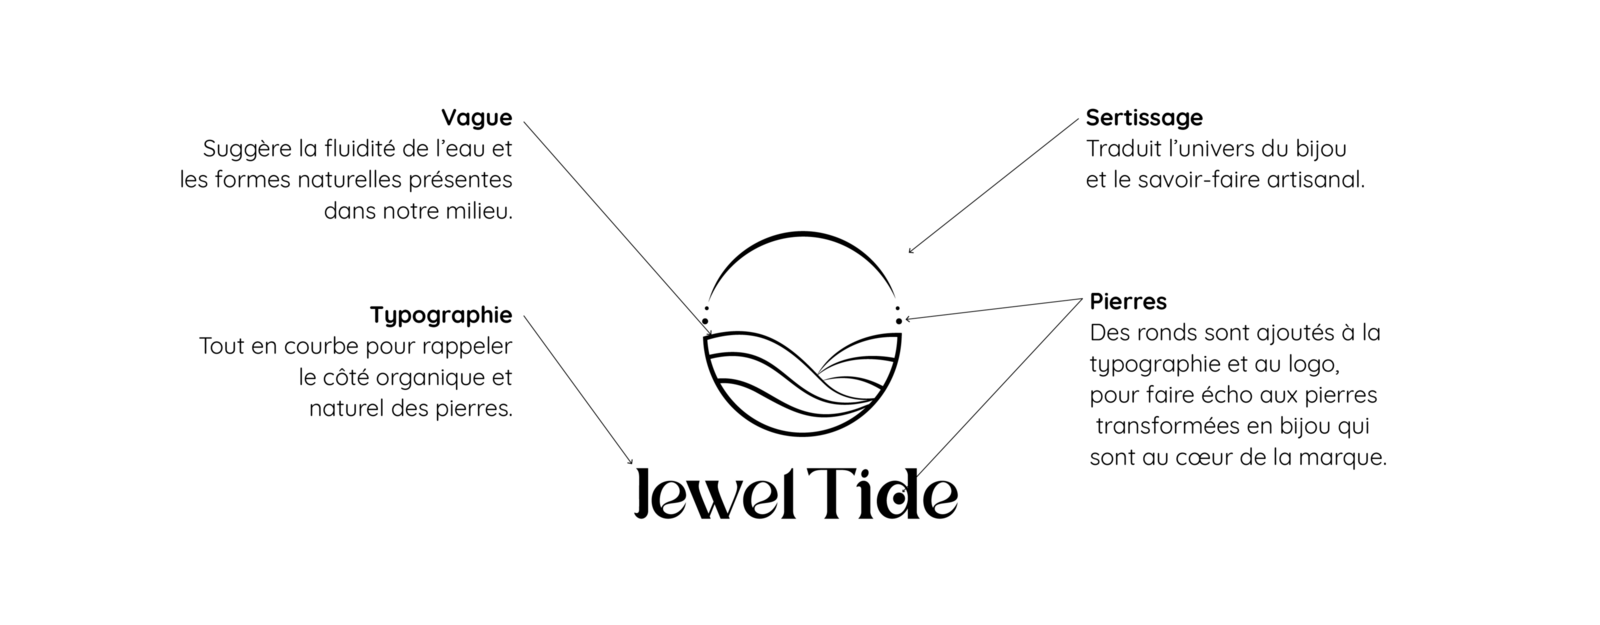 Logo final pour la marque Jewel Tide avec des texte explicatifs concernant sa réalisation